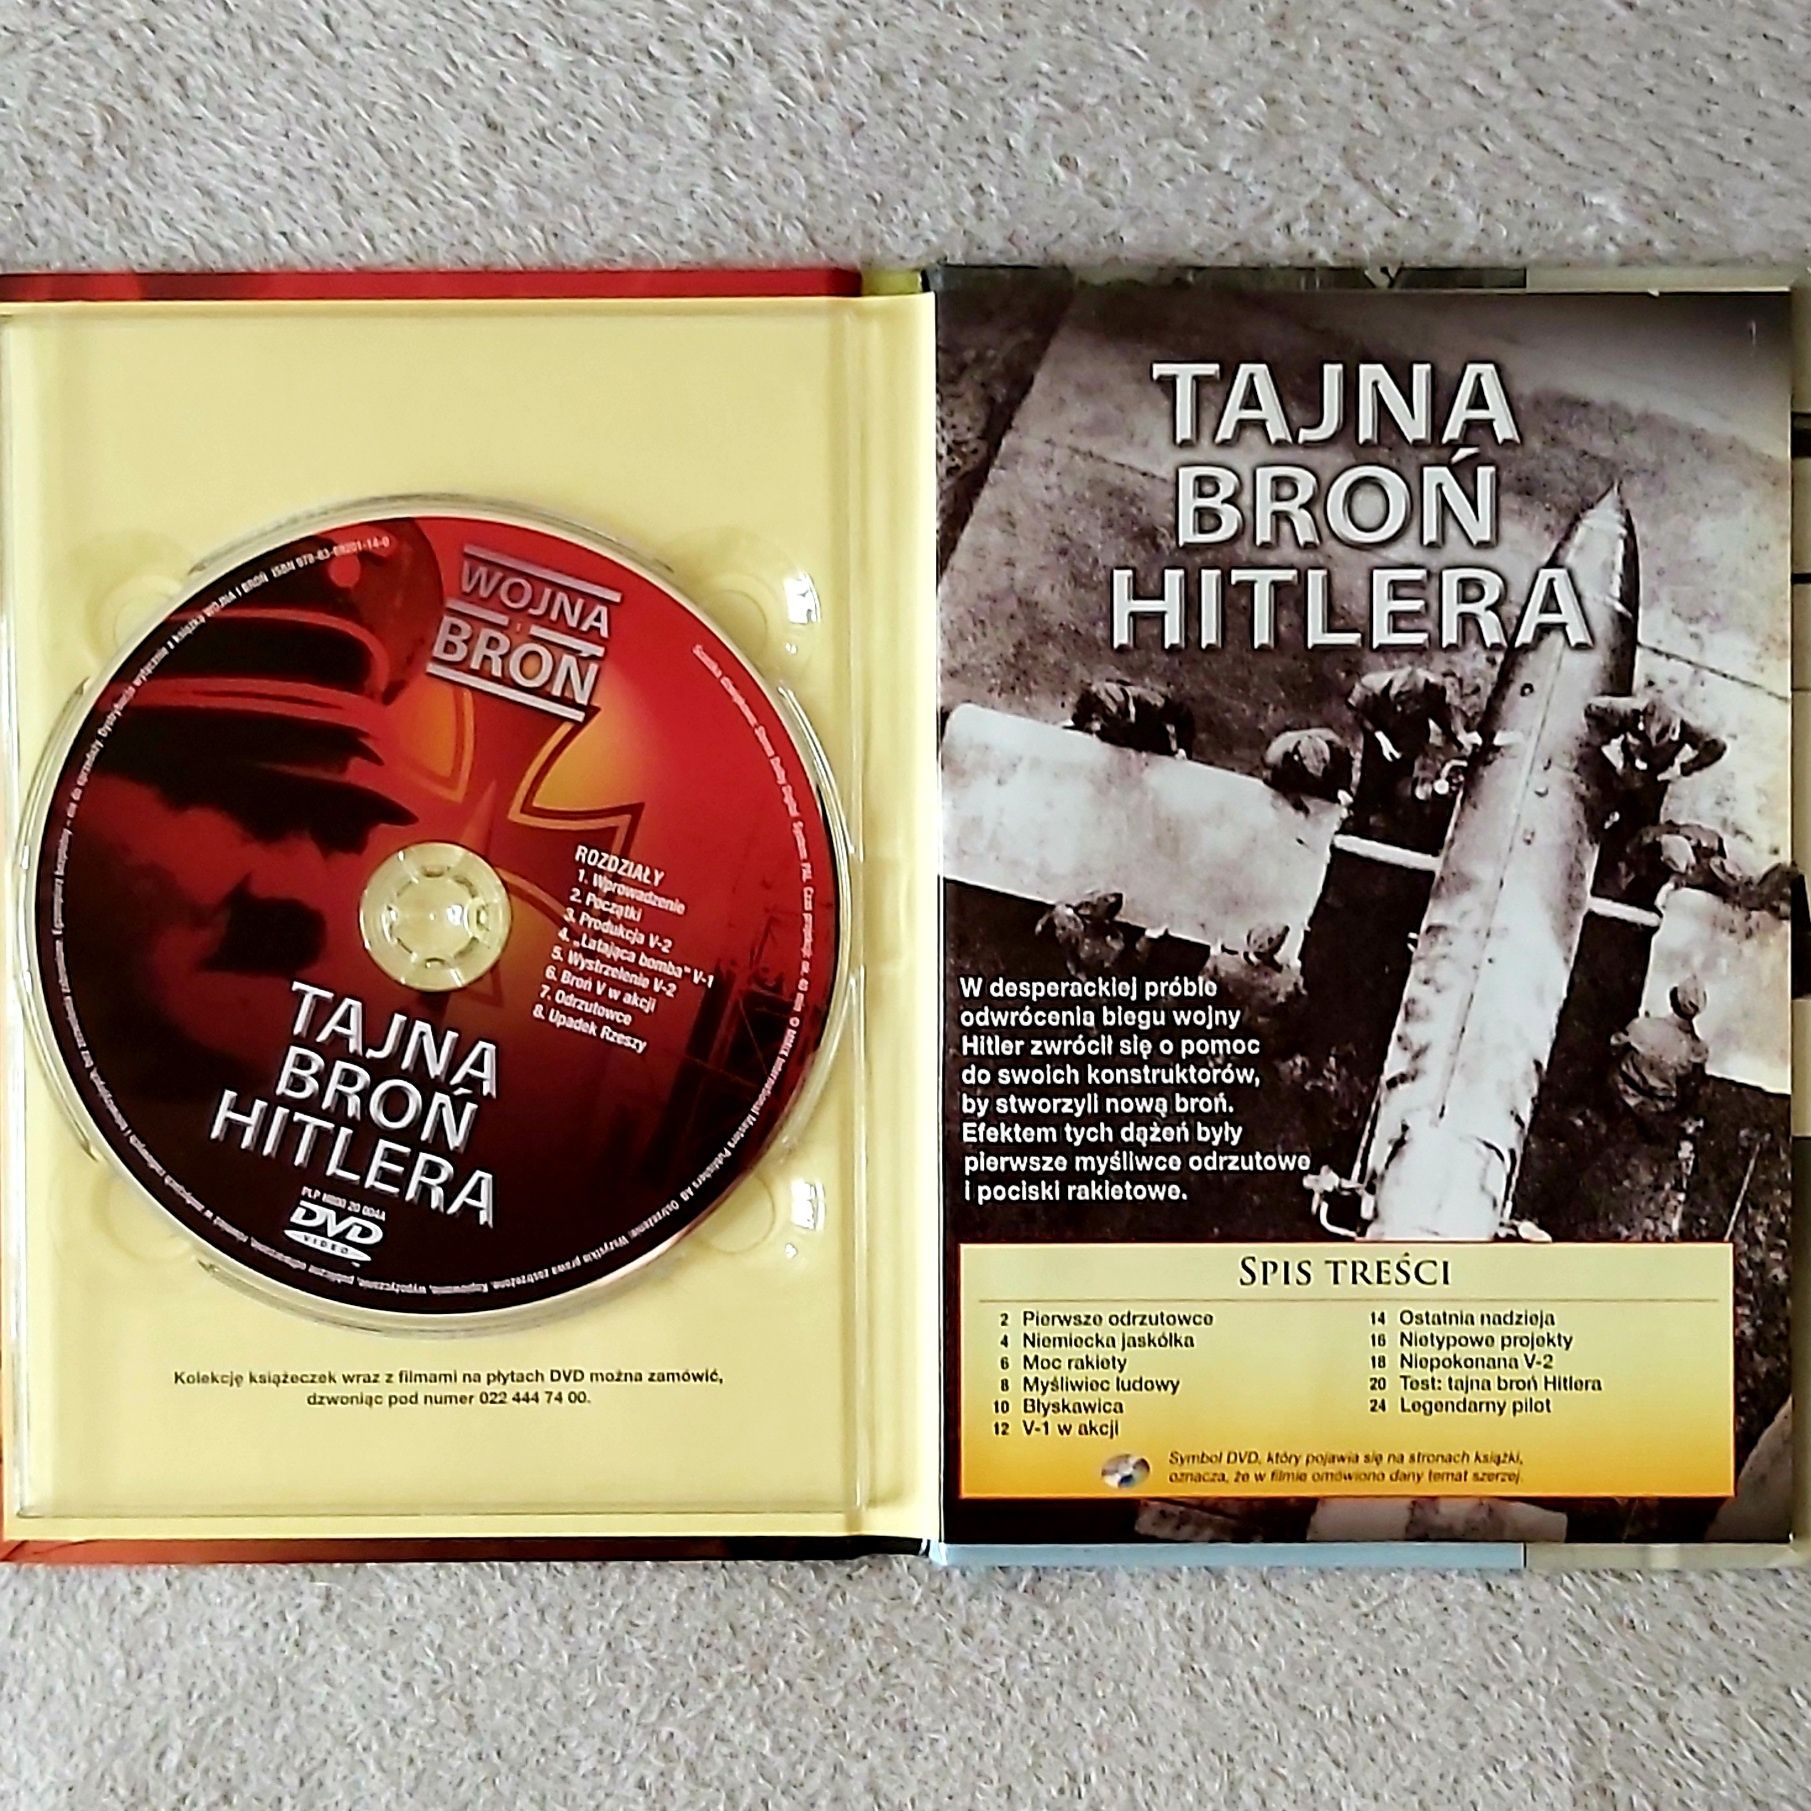 Okręty podwodne i tajna broń Hitlera na płytach DVD z książeczkami